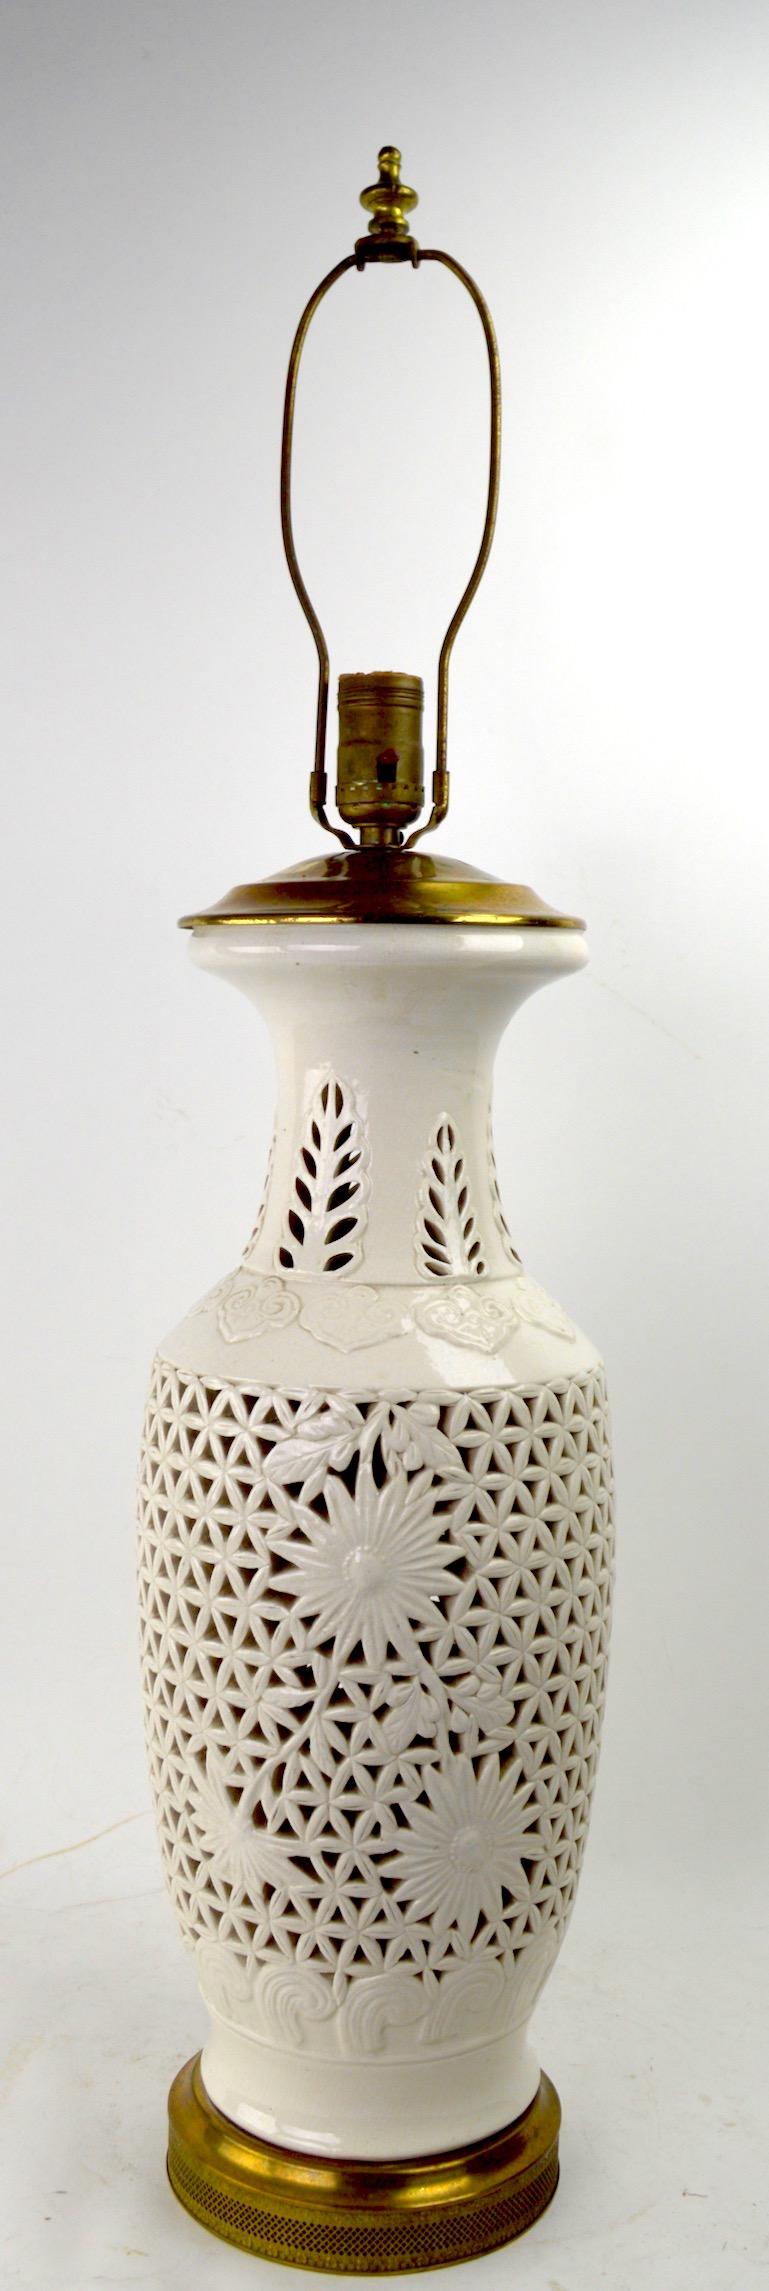 Lampe de table décorative Blanc de Chine réticulée du 20ème siècle, en bon état de fonctionnement et d'origine. Hauteur au sommet du corps de la lampe (sans harpe) 19 pouces. L'abat-jour n'est pas inclus.